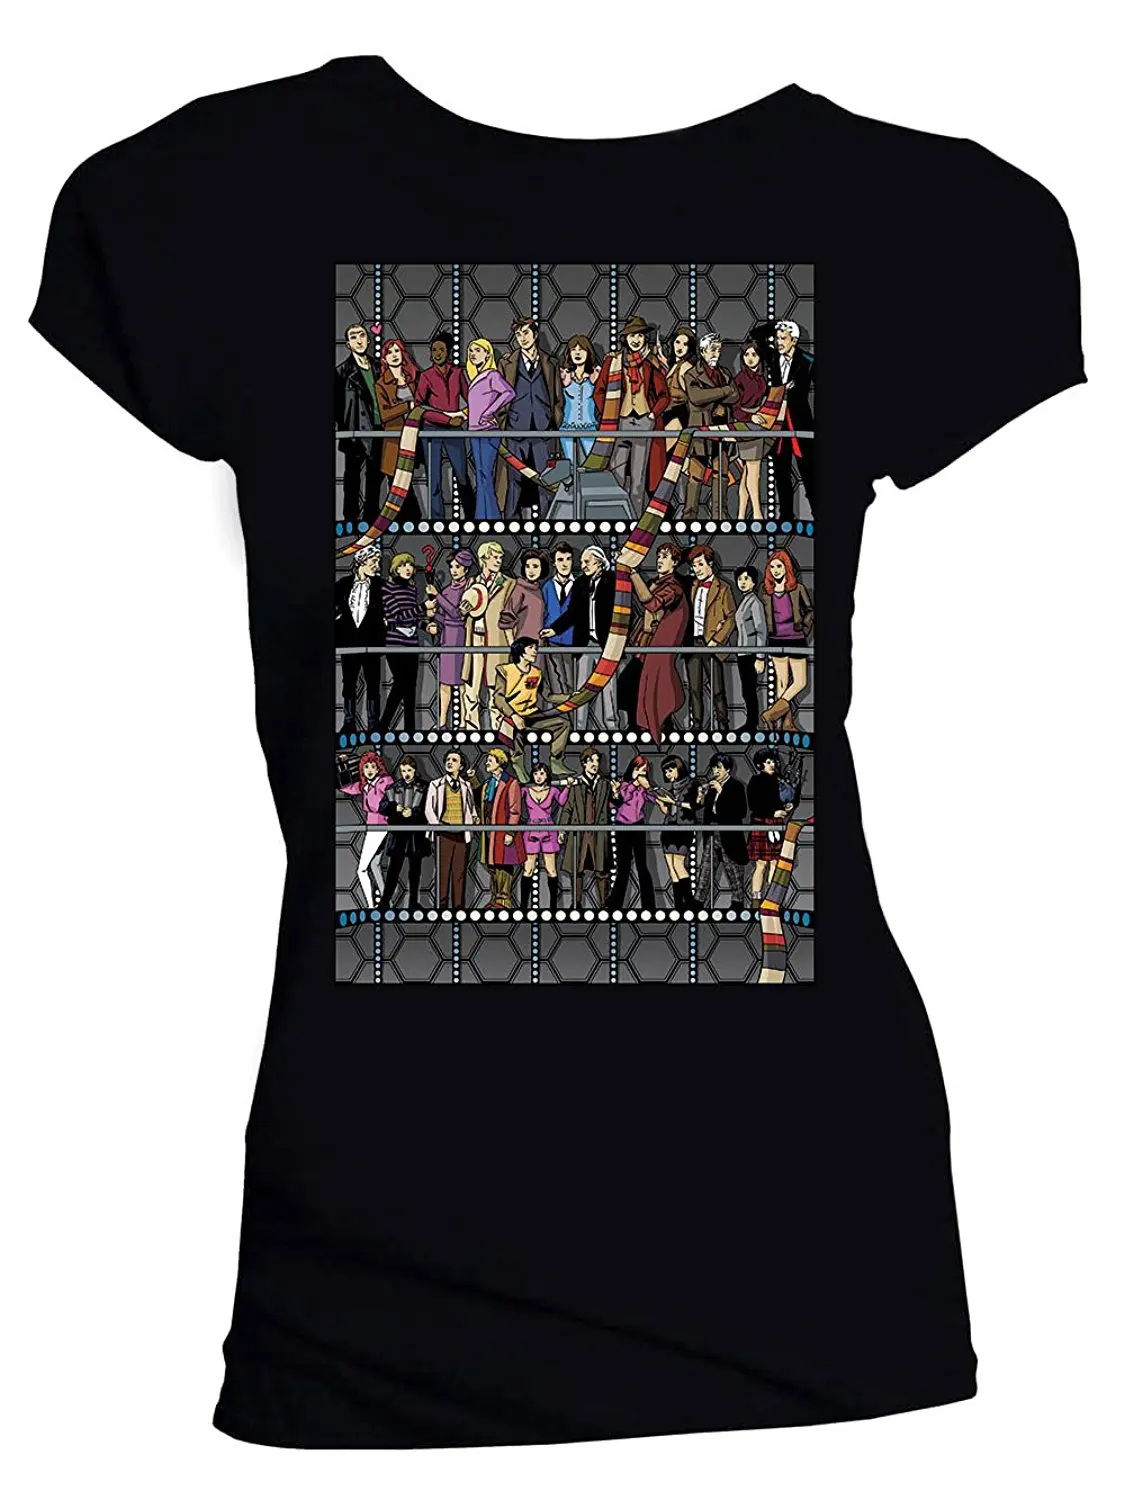 Классическая женская футболка Doctor Who, все доктора и компаньоны, цвет черный, плюс размер, хлопковая футболка с коротким рукавом, топ, футболка